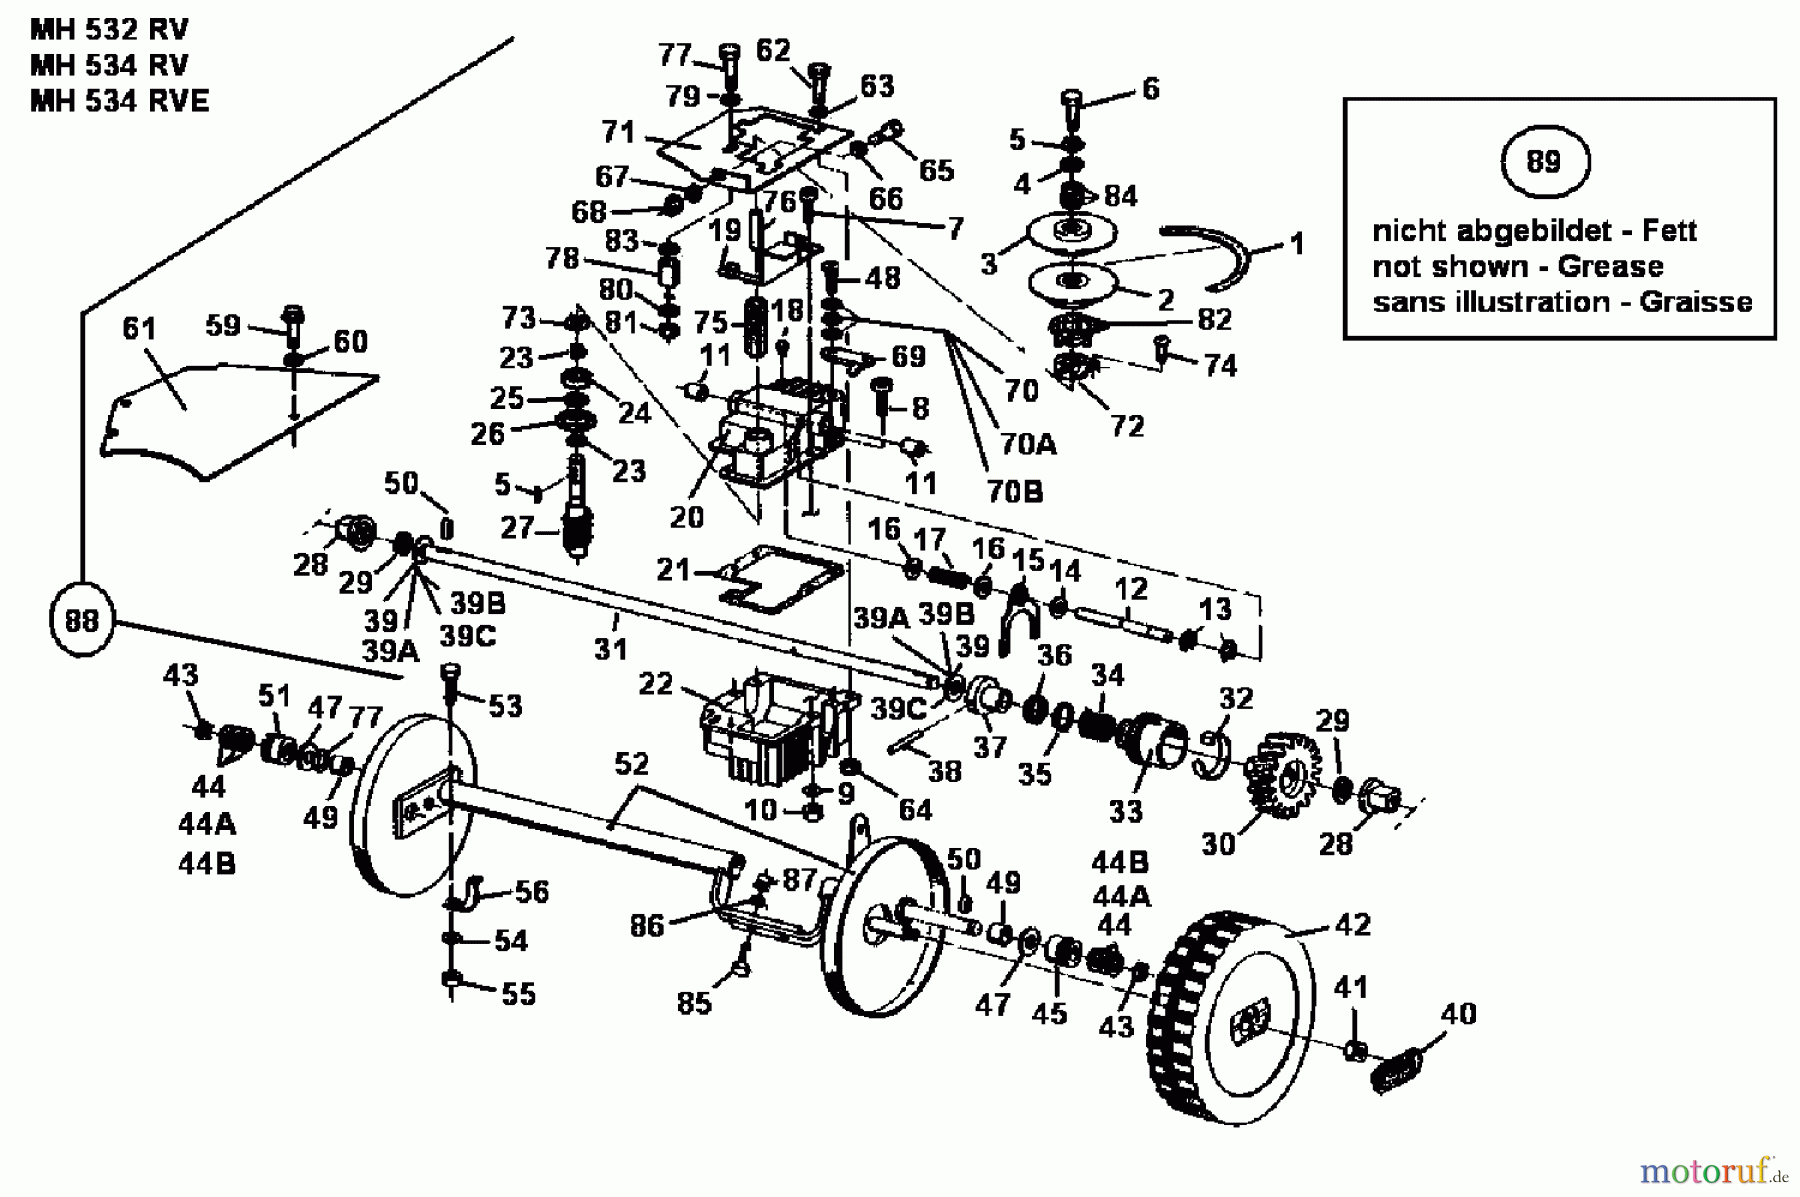  Gutbrod Petrol mower self propelled MH 534 RVE 04007.03  (1990) Gearbox, Wheels